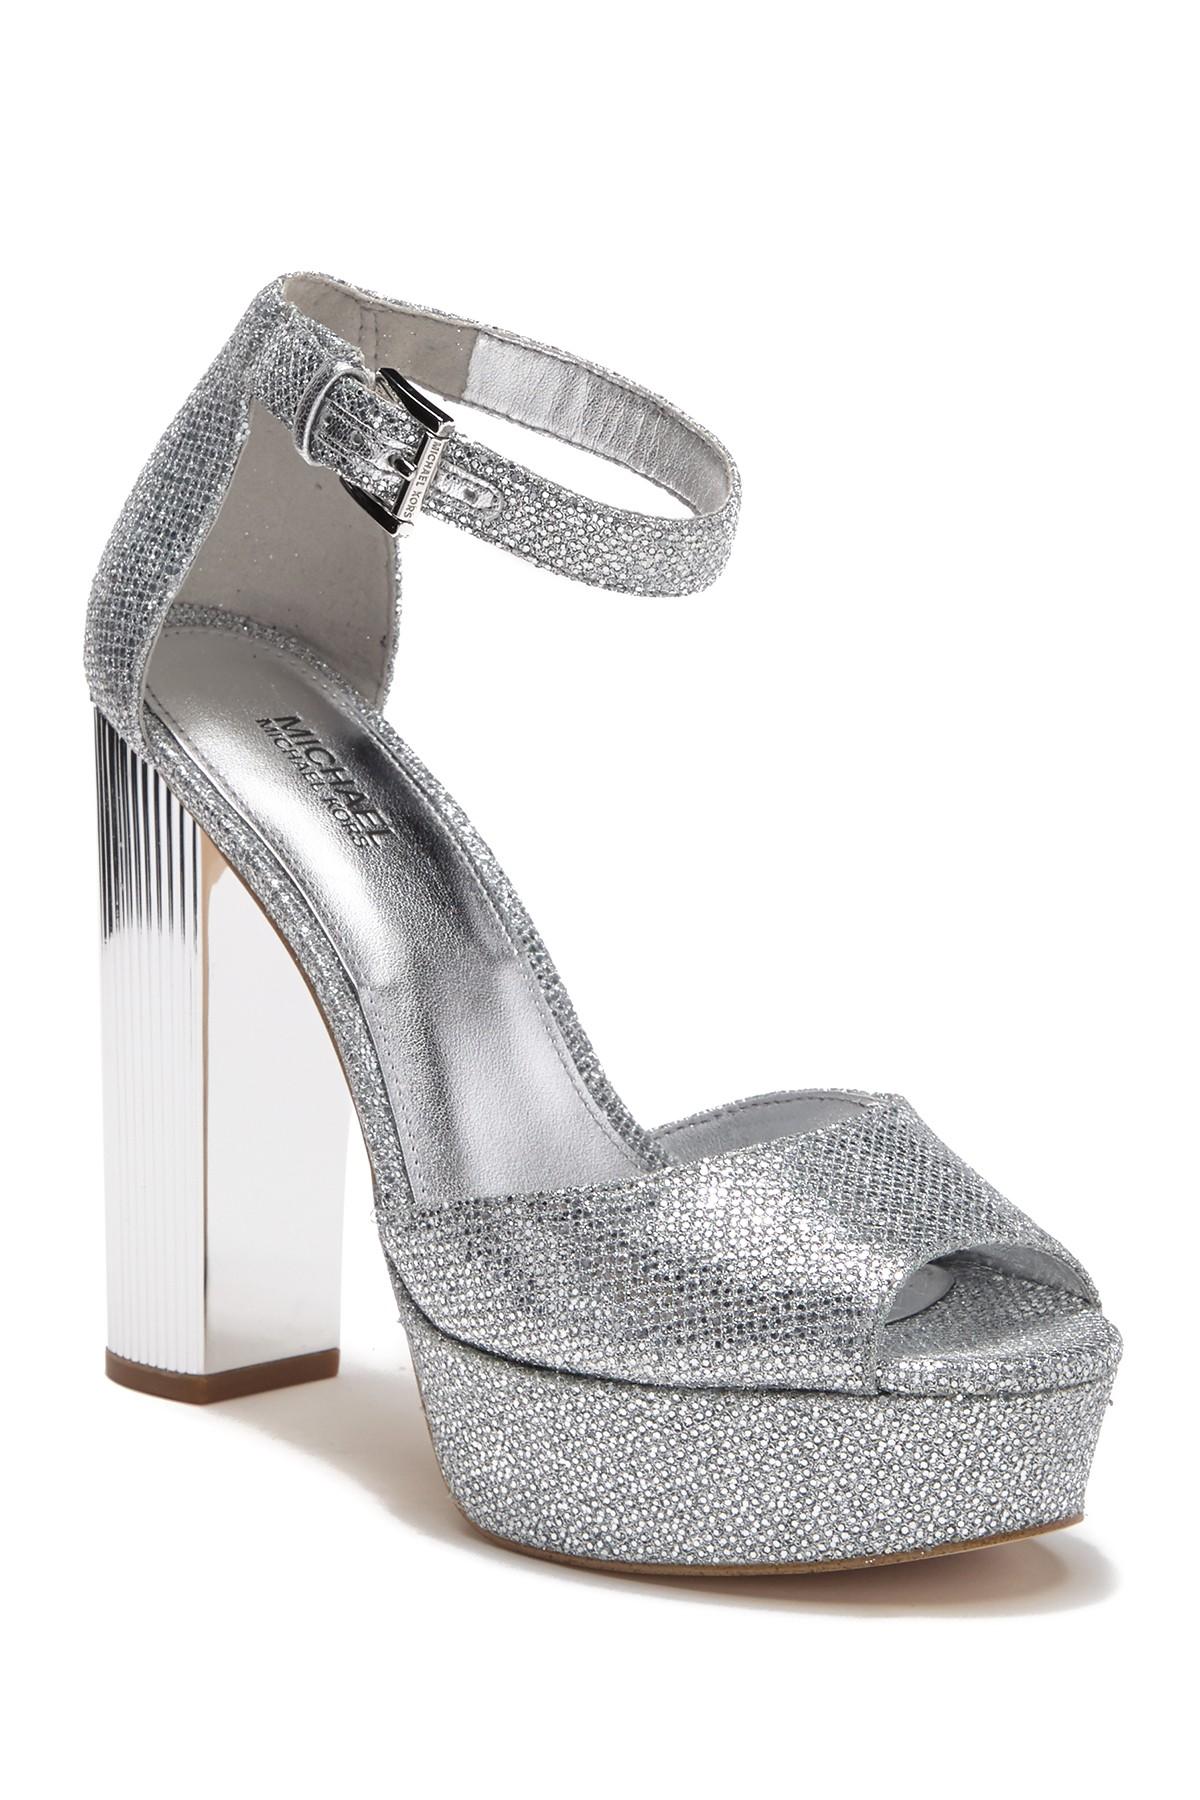 MICHAEL KORS women shoes silver metallic leather Allie Plate Wrap sneaker   eBay